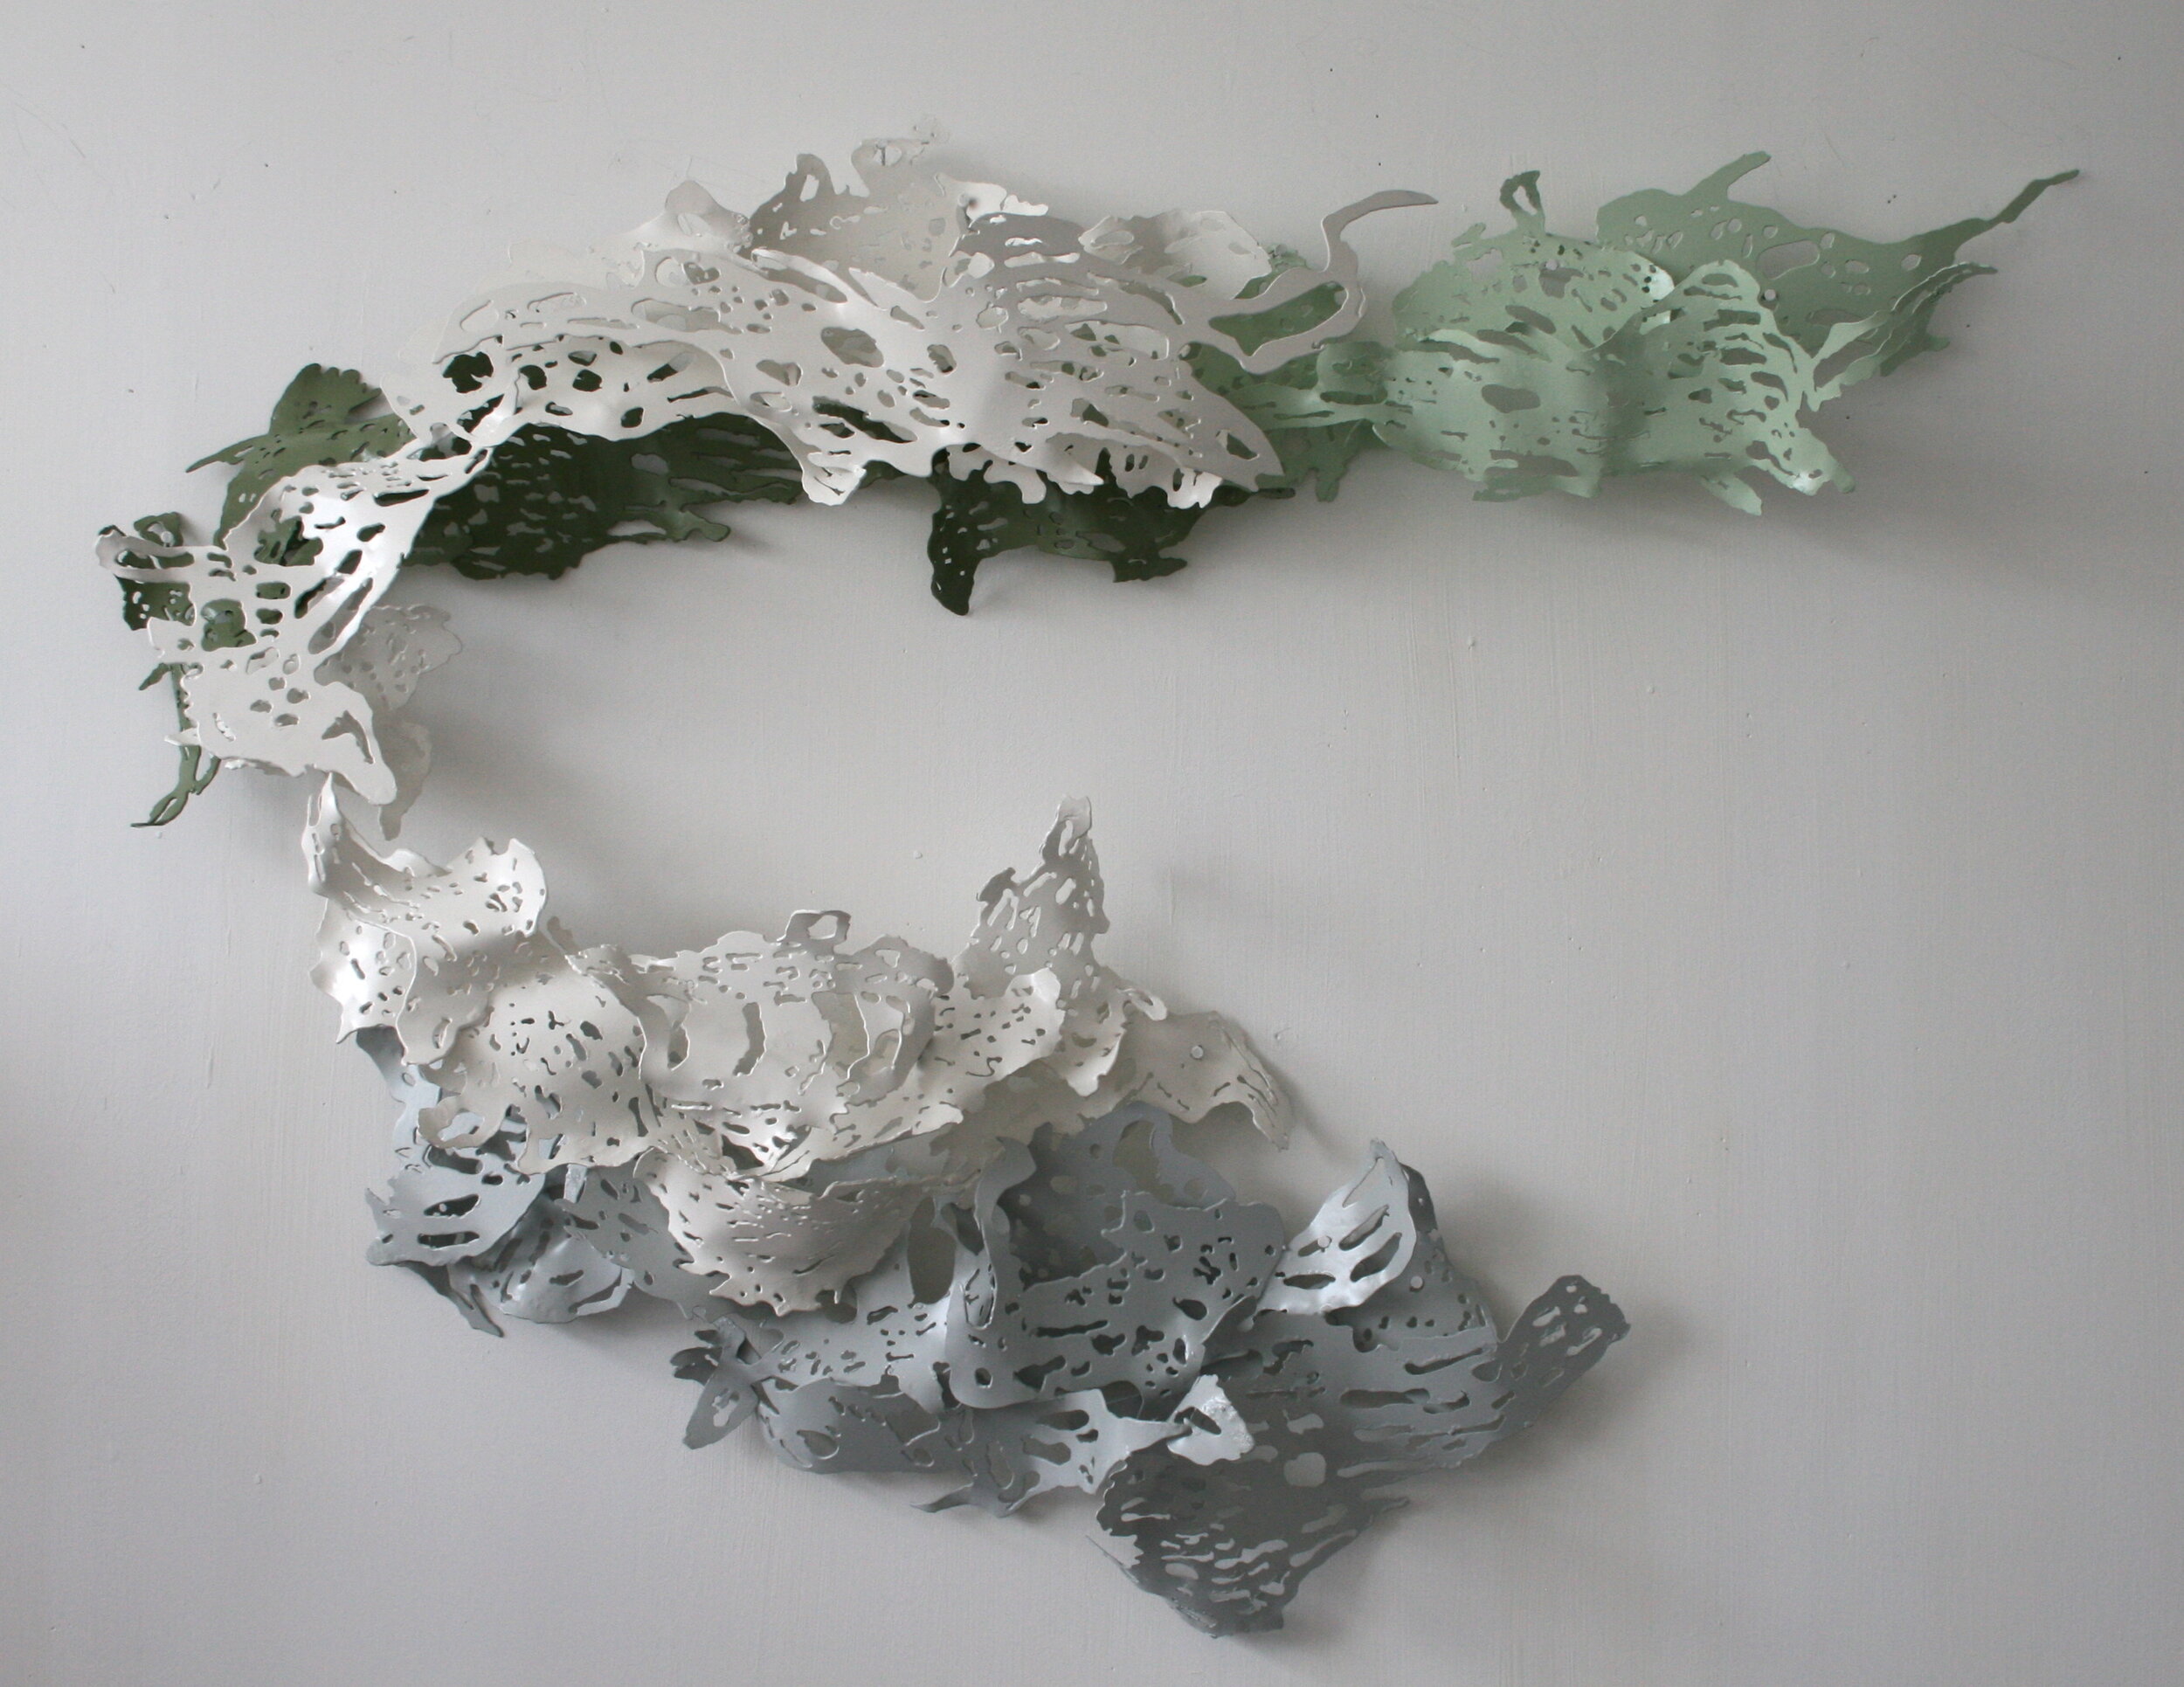 Papier Mâché Sculpture with Anya Beaumont - PoundArts